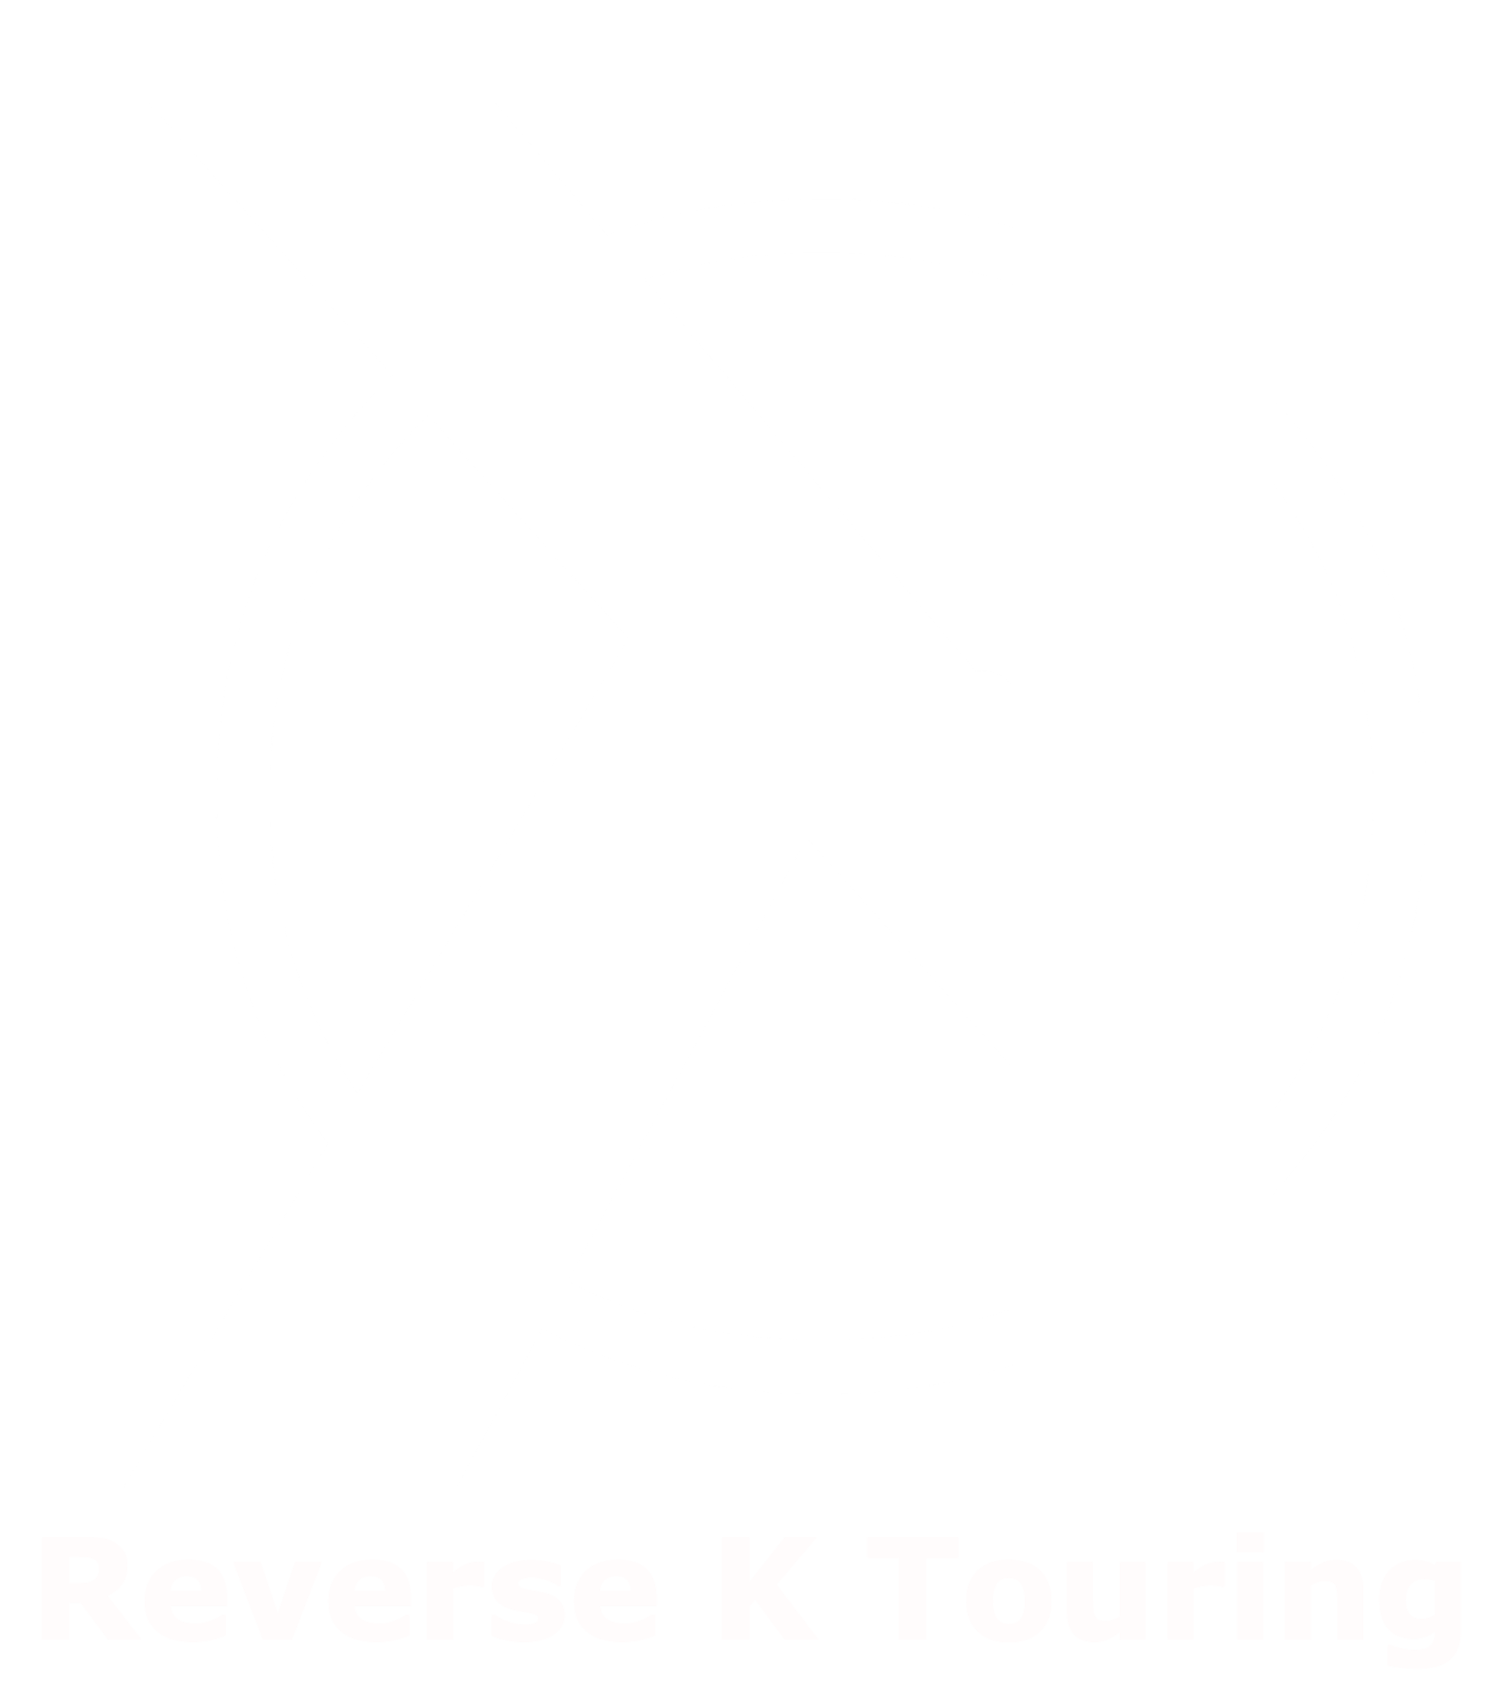 Reverse K Touring